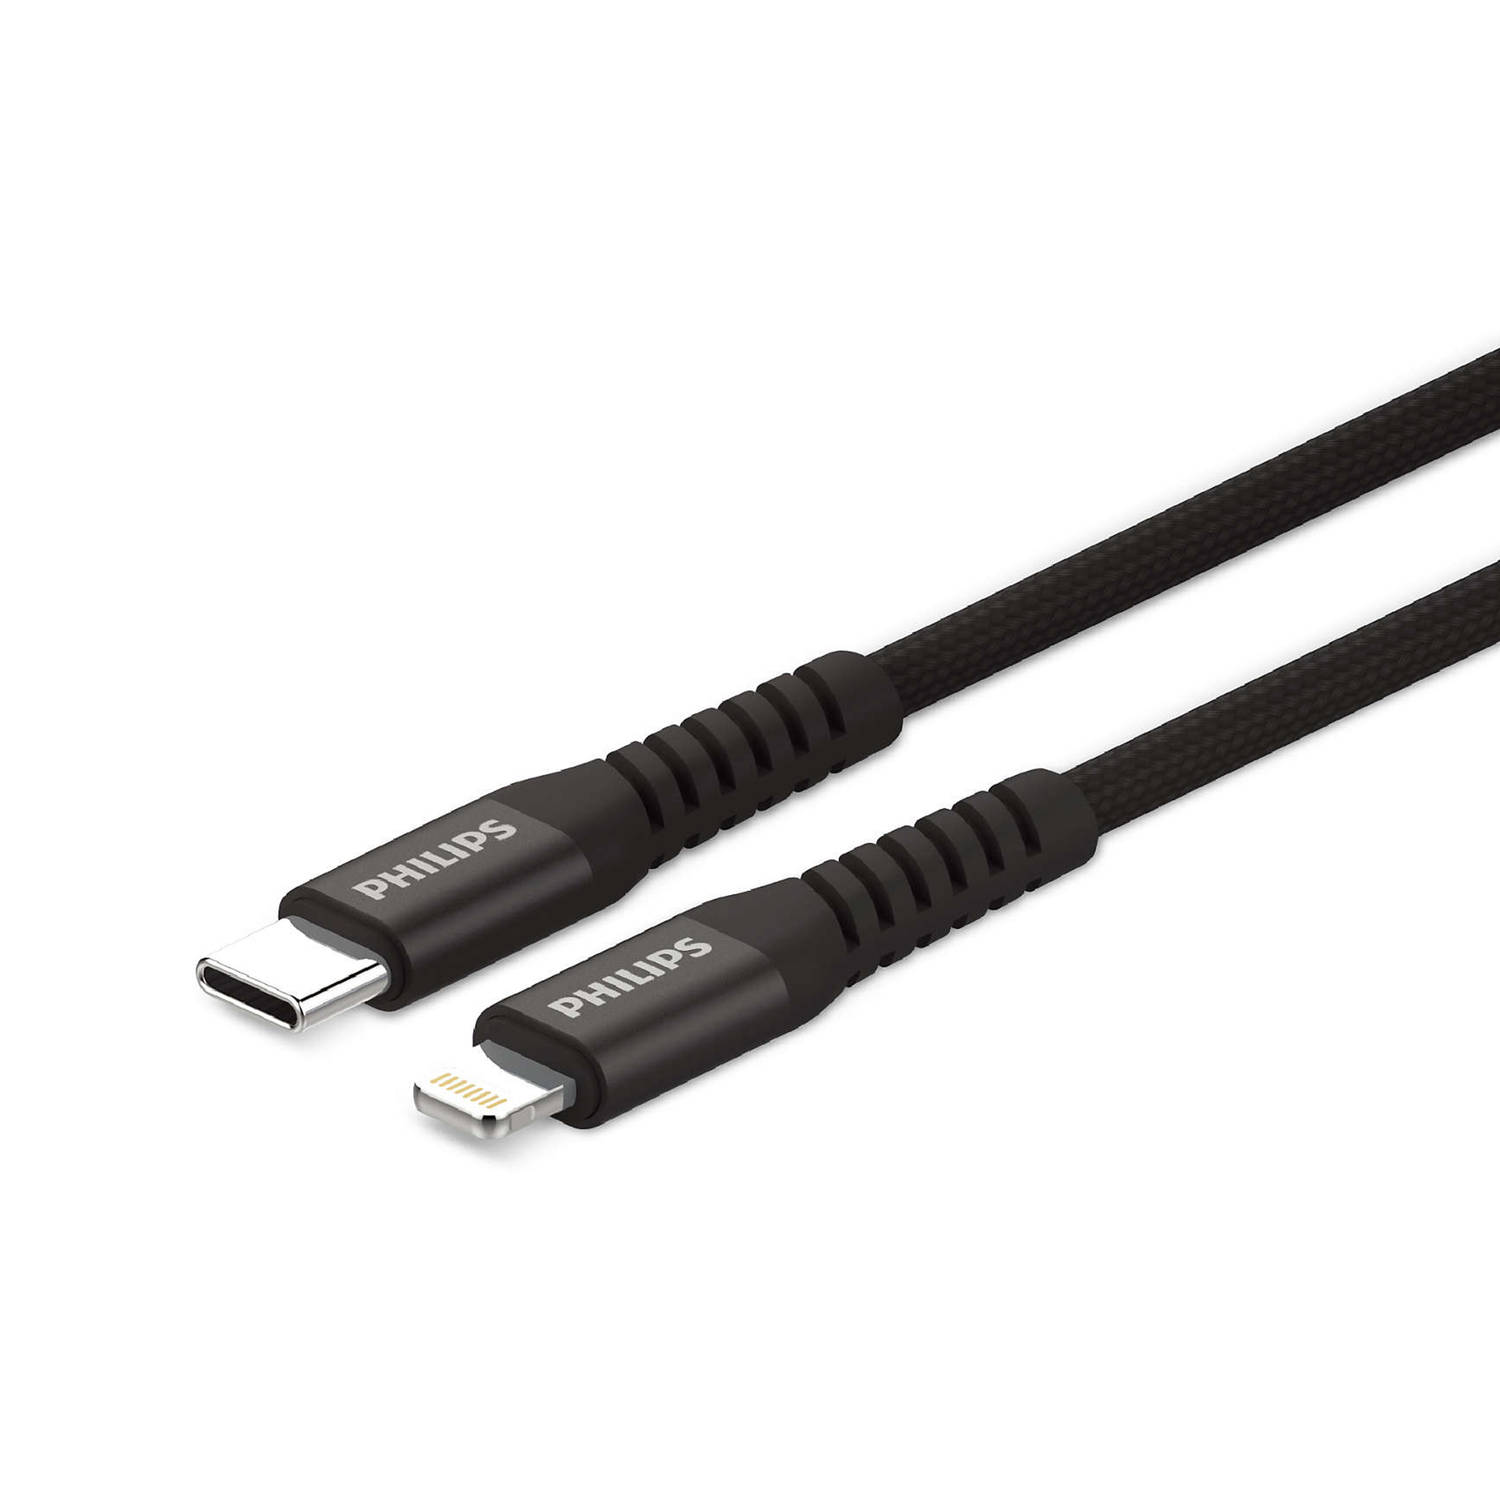 Philips Usb Kabel 3.0 Usb-c Lightning Voor Iphone Lengte: 1,2 Meter Zwart Nylon